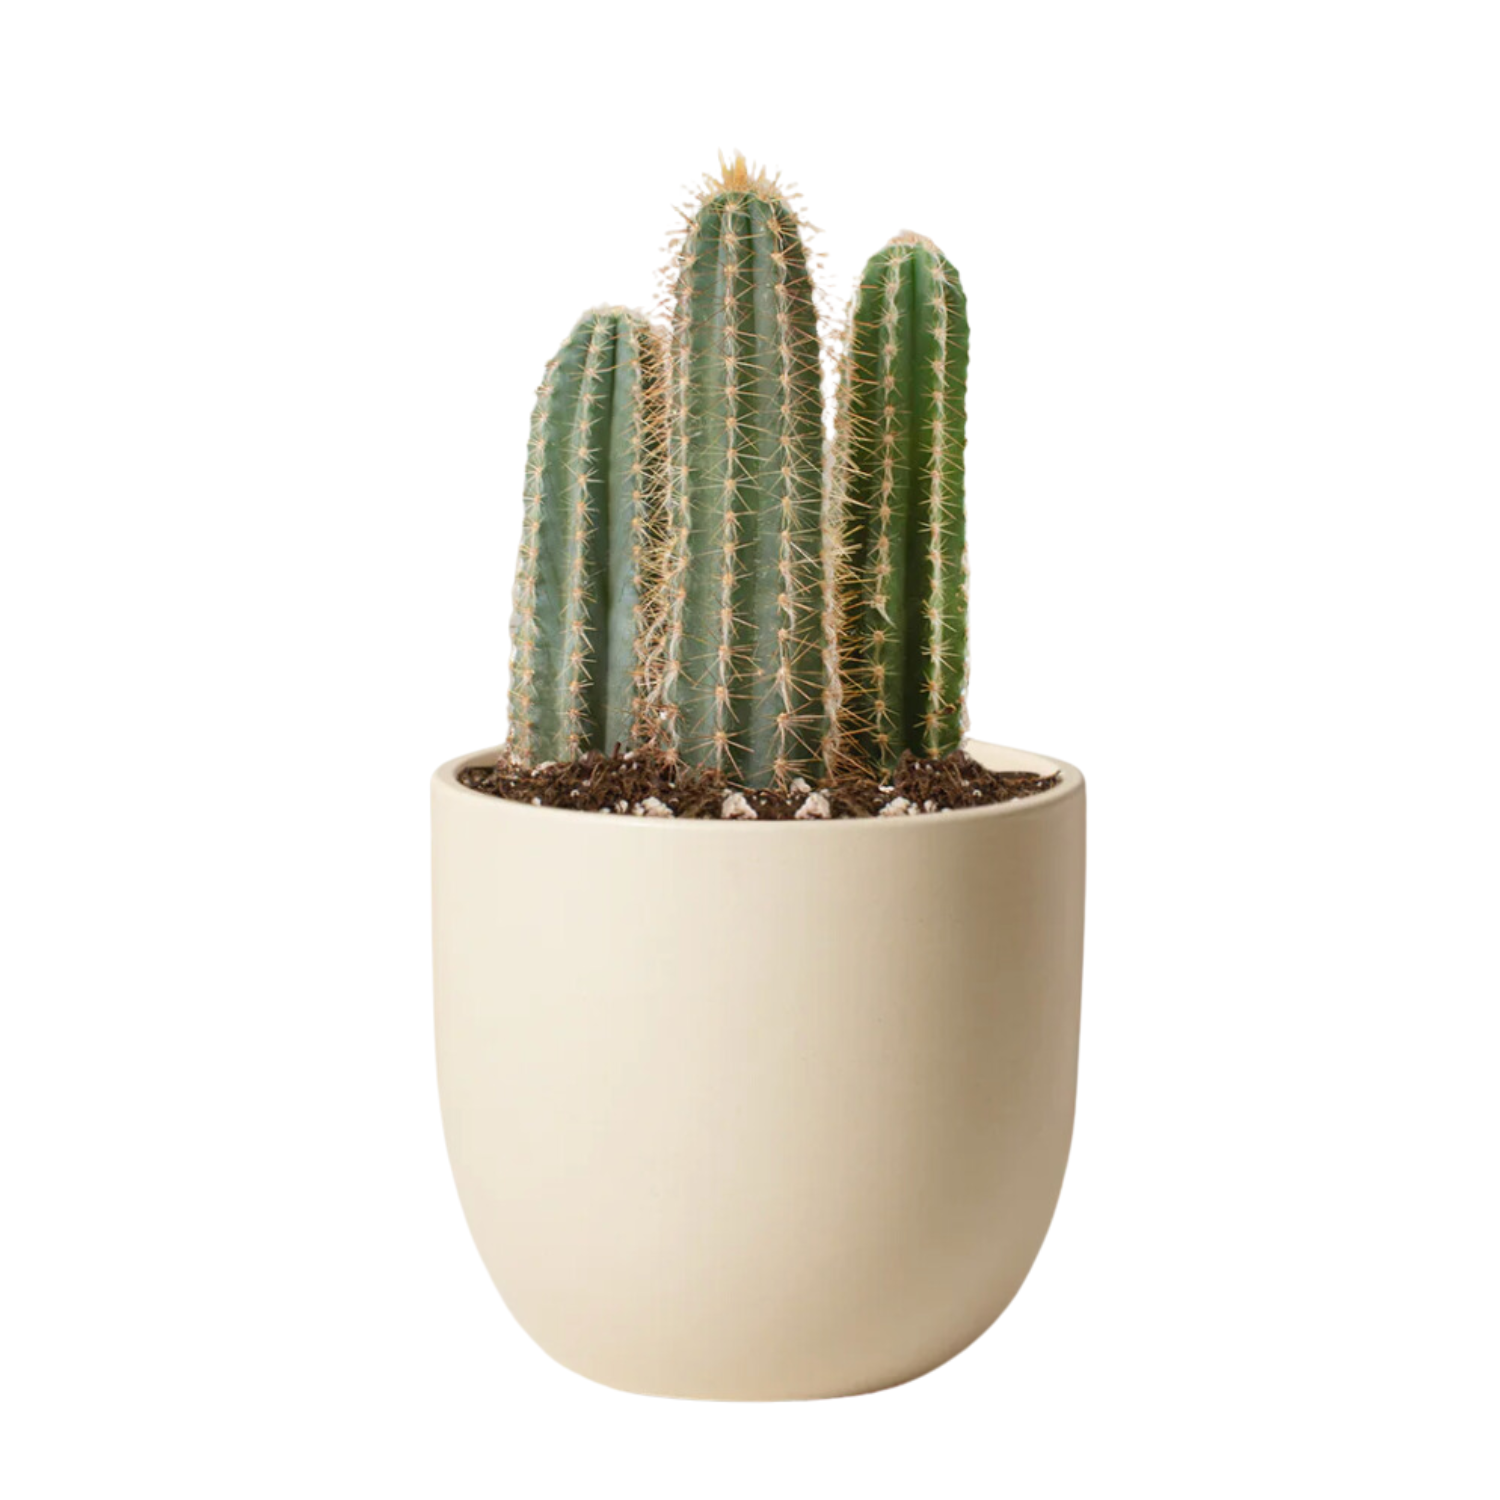 Live Cactus in Pot